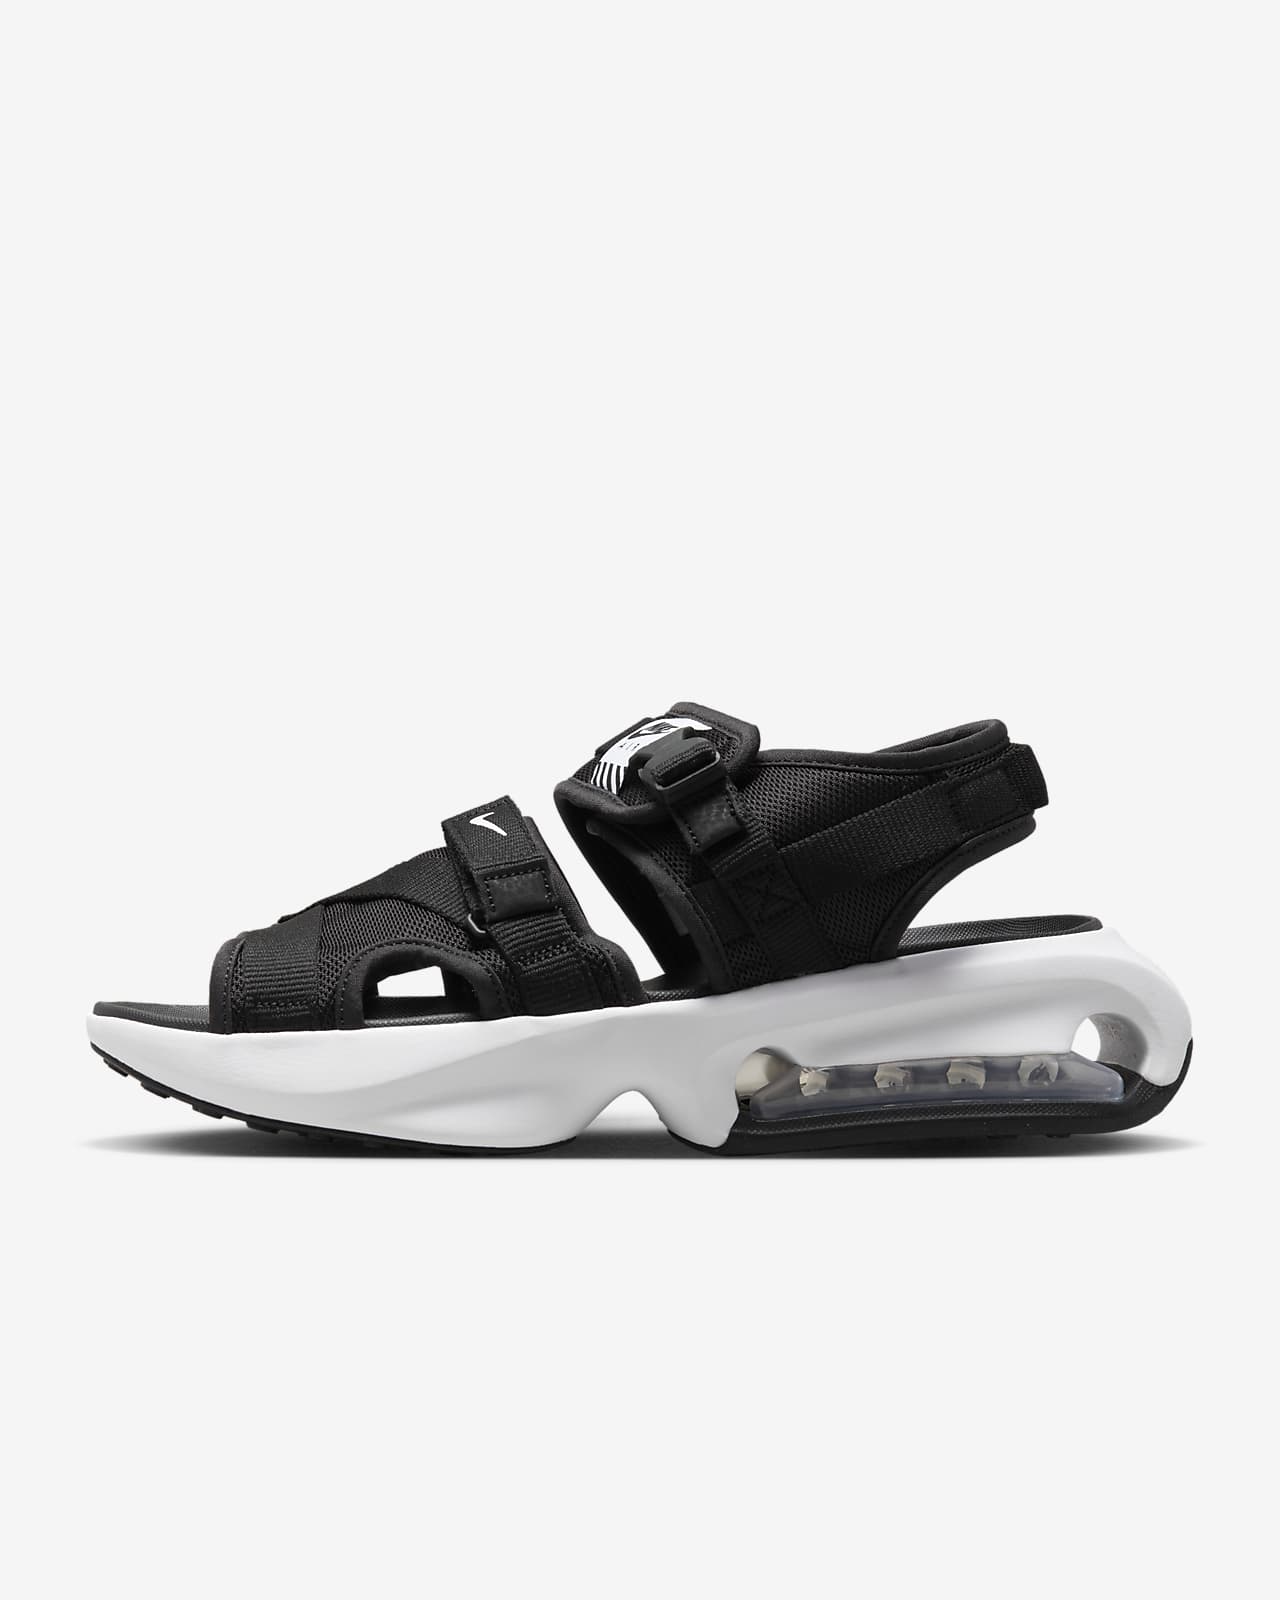 Nike Air Max Sol Men's Sandals